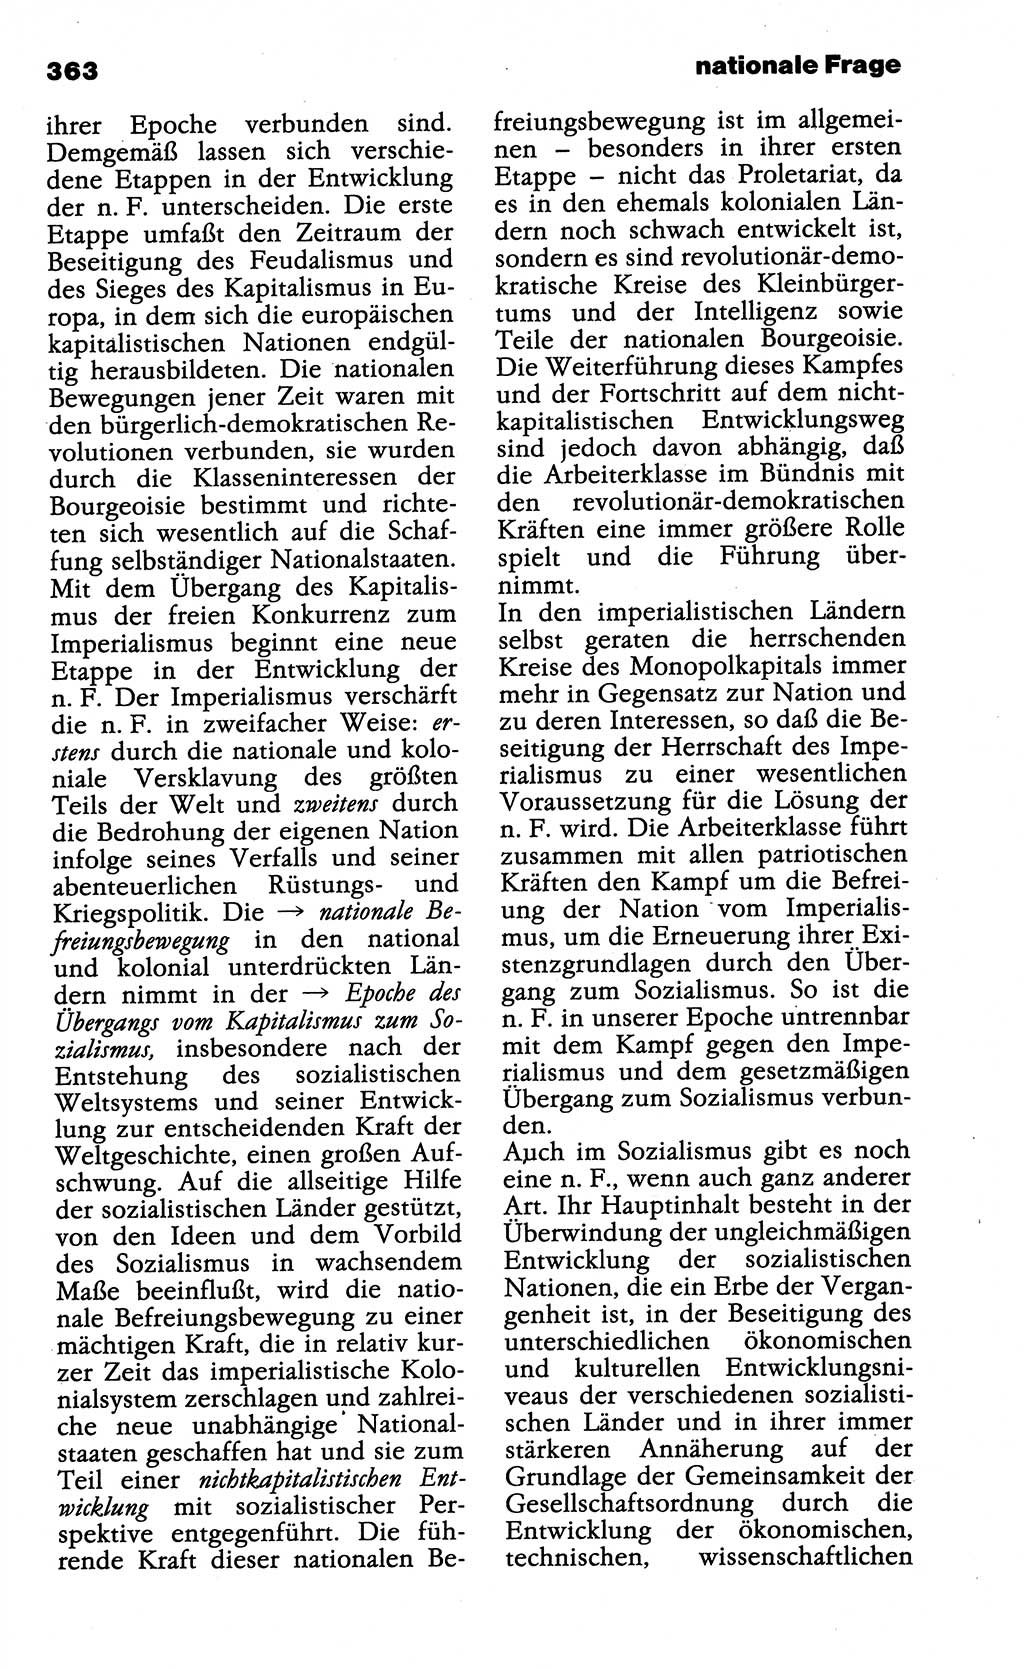 Wörterbuch der marxistisch-leninistischen Philosophie [Deutsche Demokratische Republik (DDR)] 1985, Seite 363 (Wb. ML Phil. DDR 1985, S. 363)